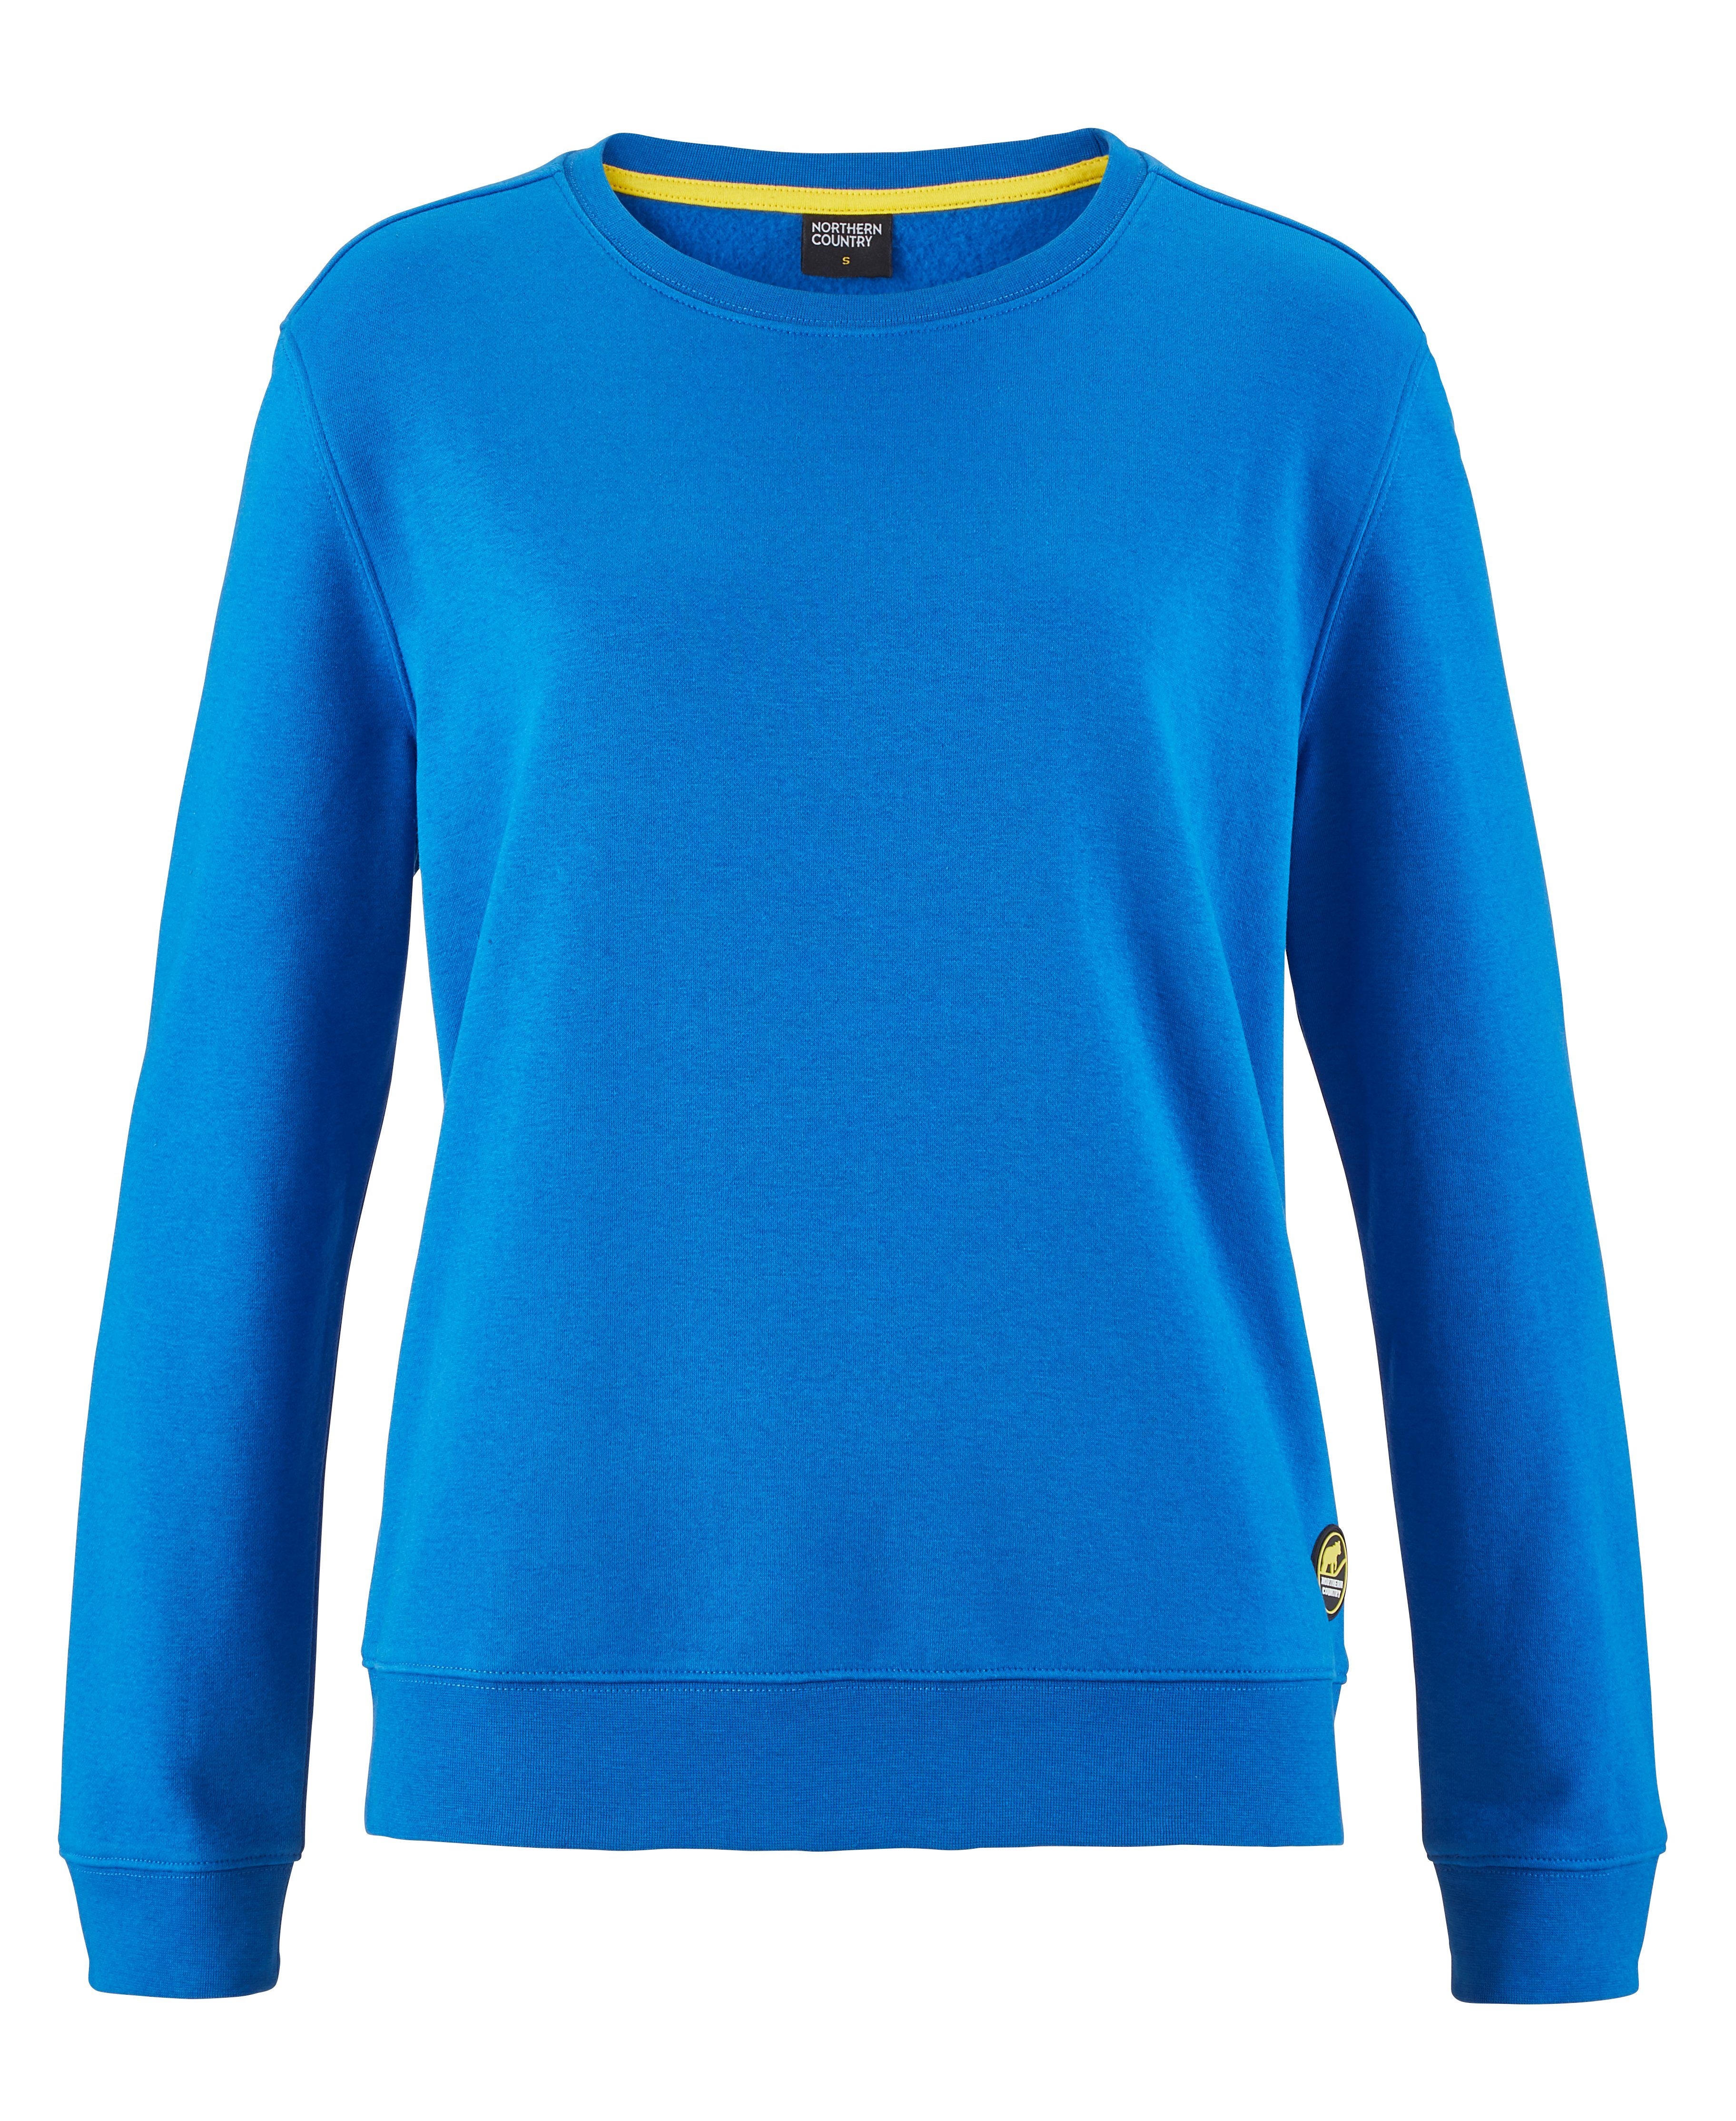 Northern Country Sweatshirt für Damen aus soften Baumwollmix, trägt sich locker und leicht Lapis Blue